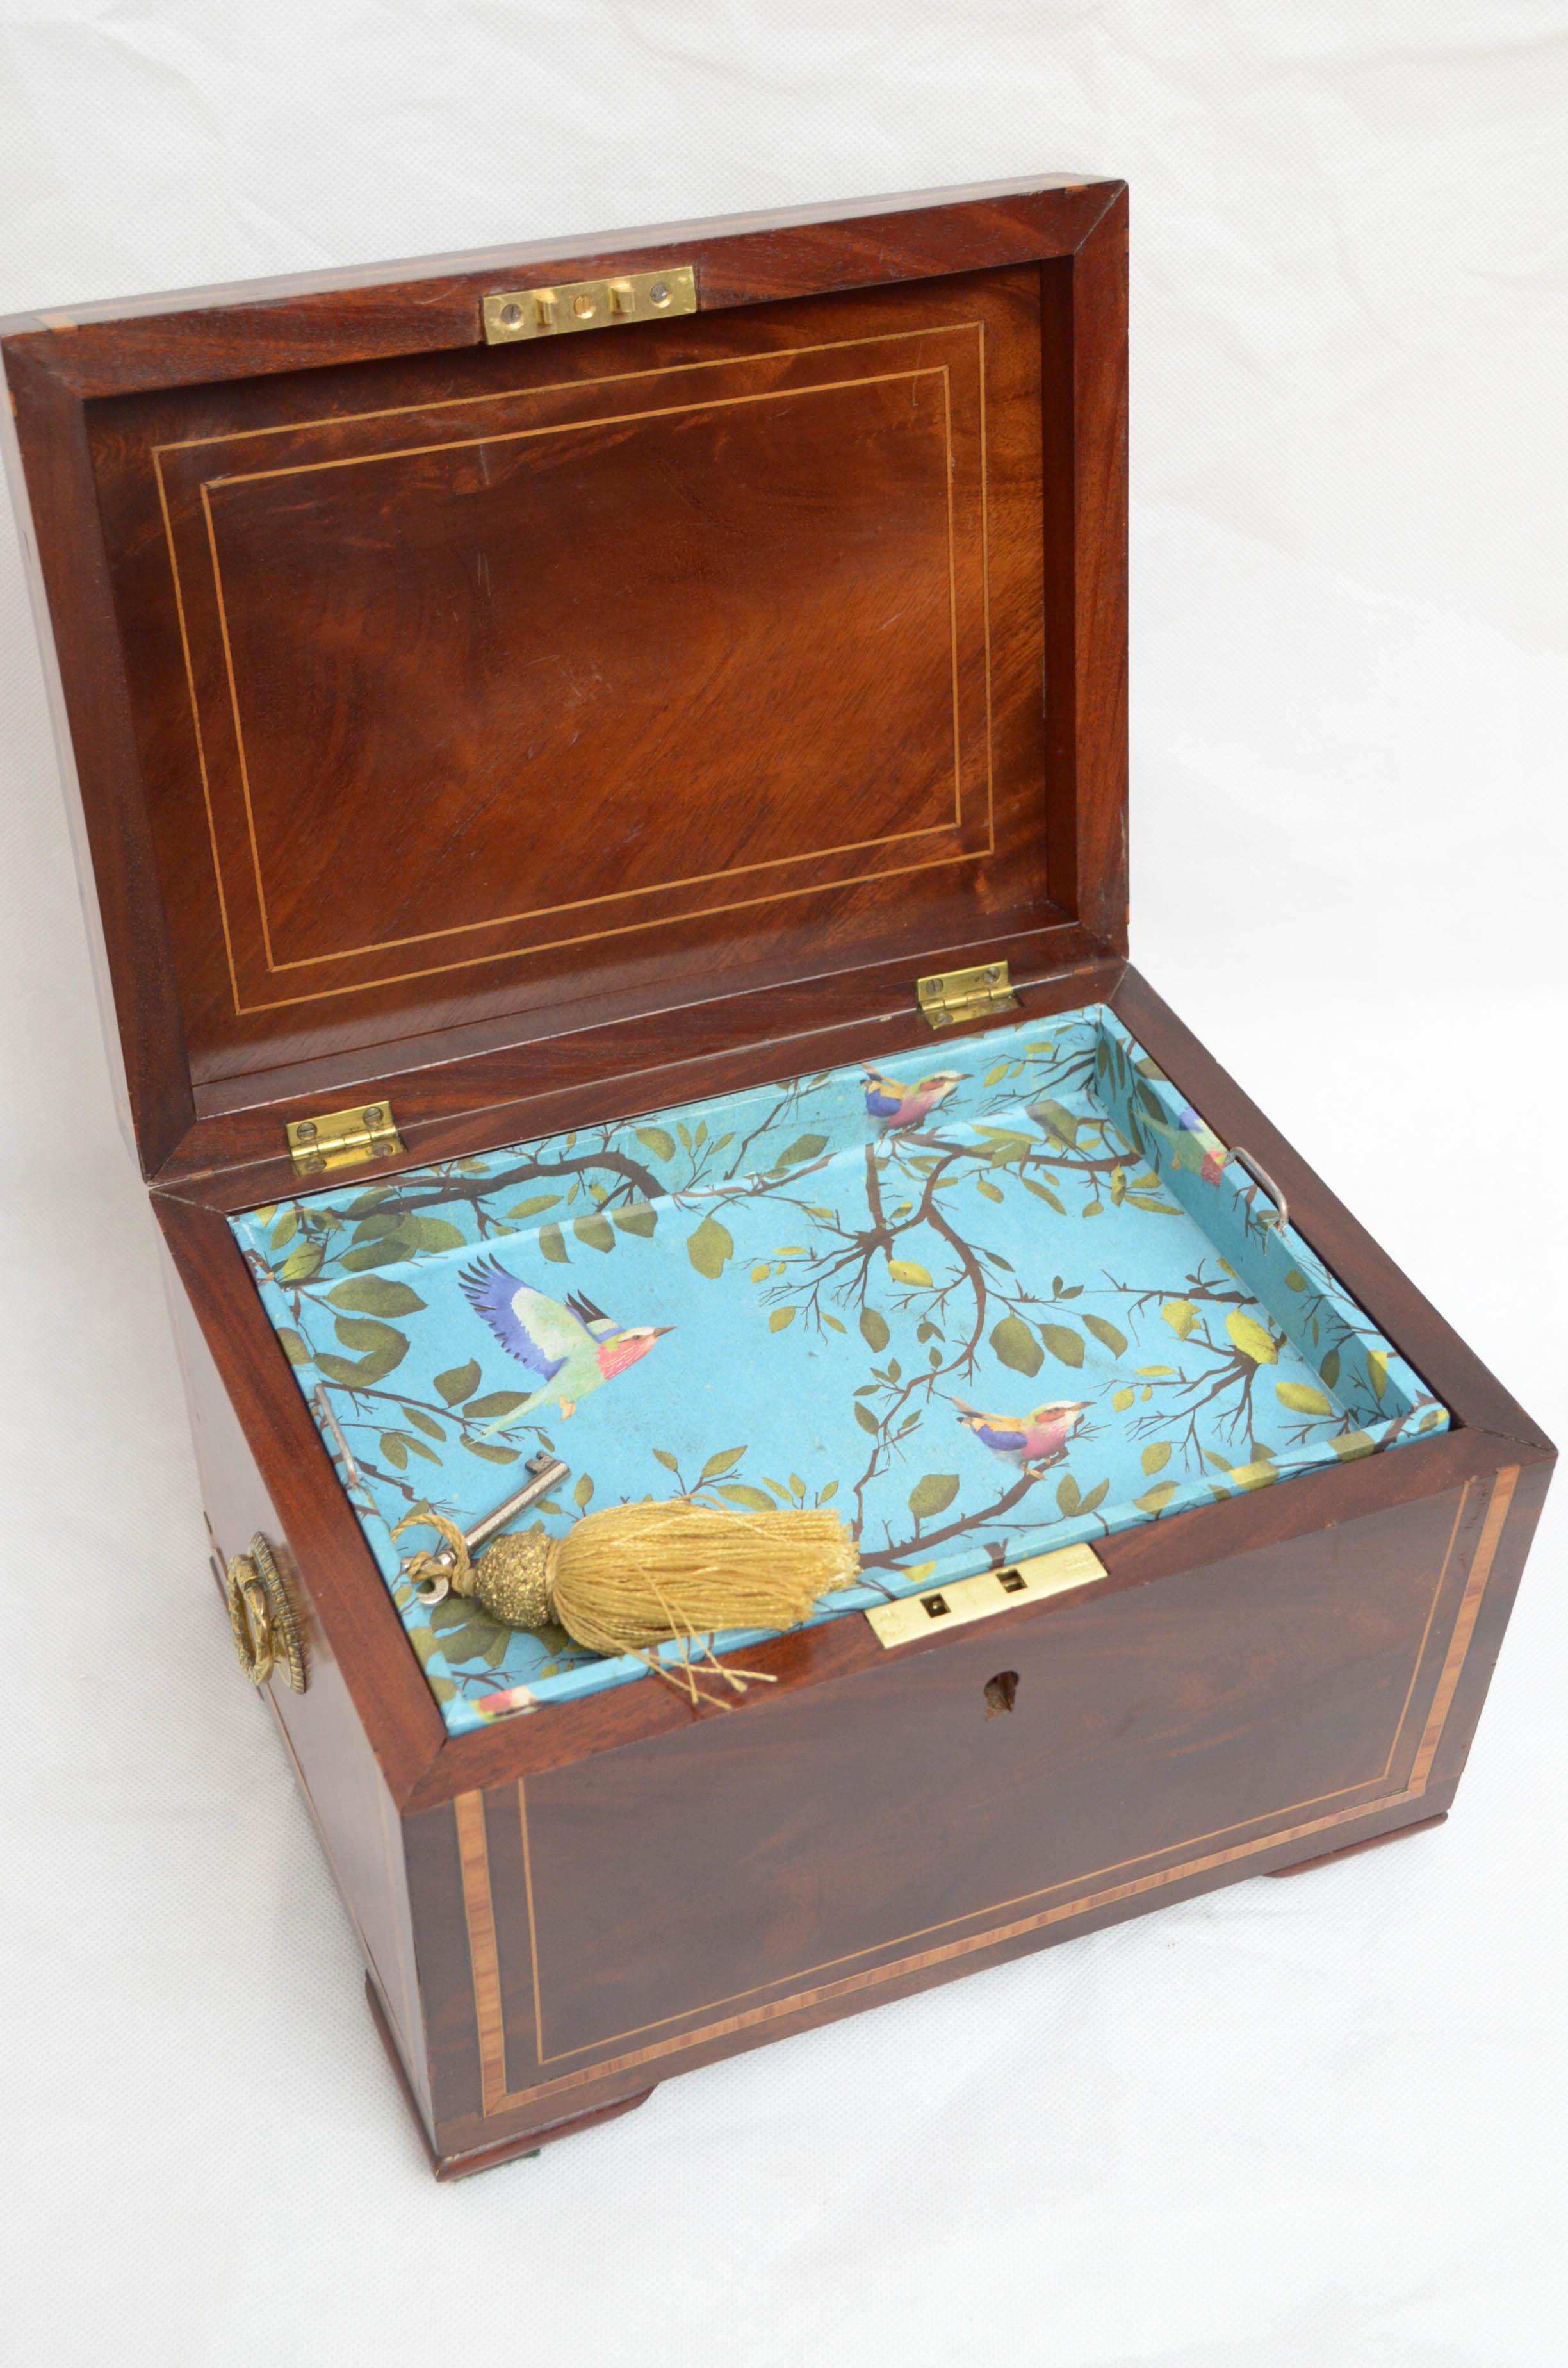 English Georgian Mahogany Jewelry Box with Tray